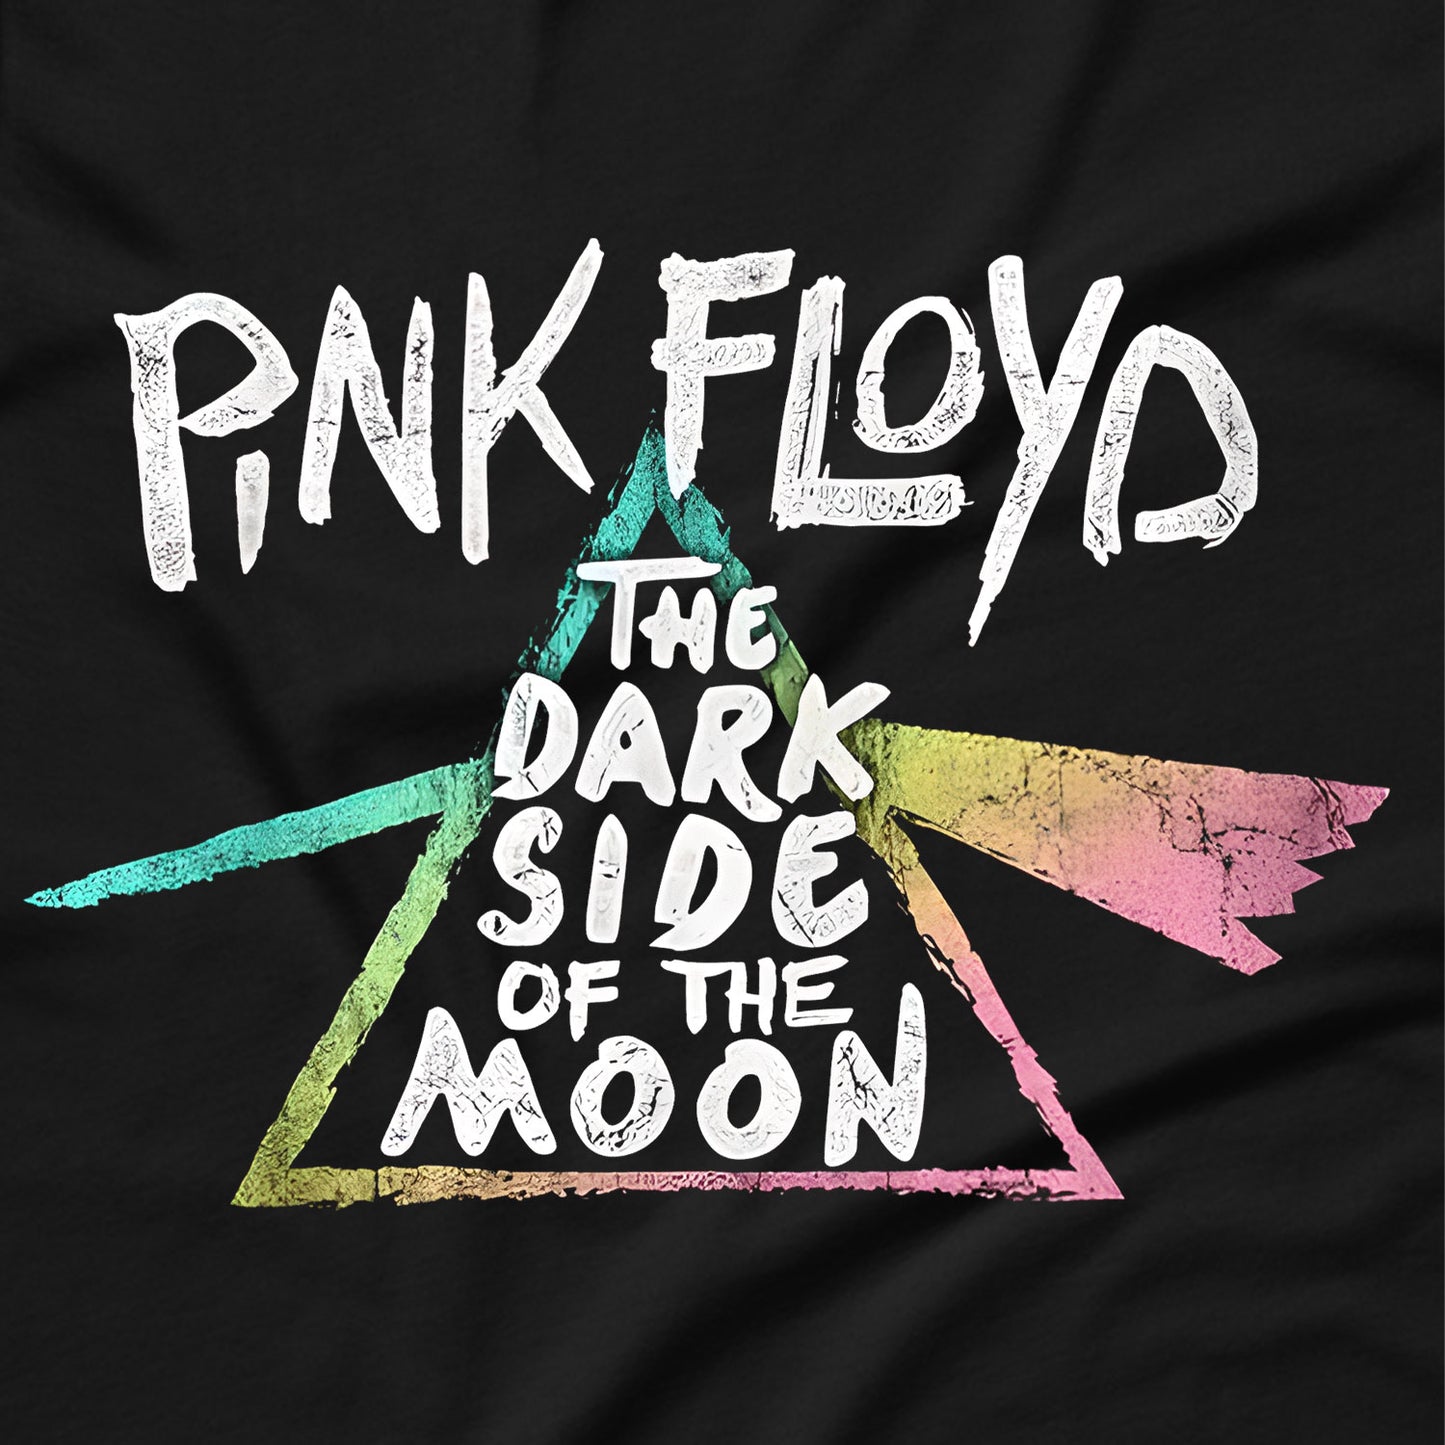 Pink Floyd - Dark Side Festical T-Shirt